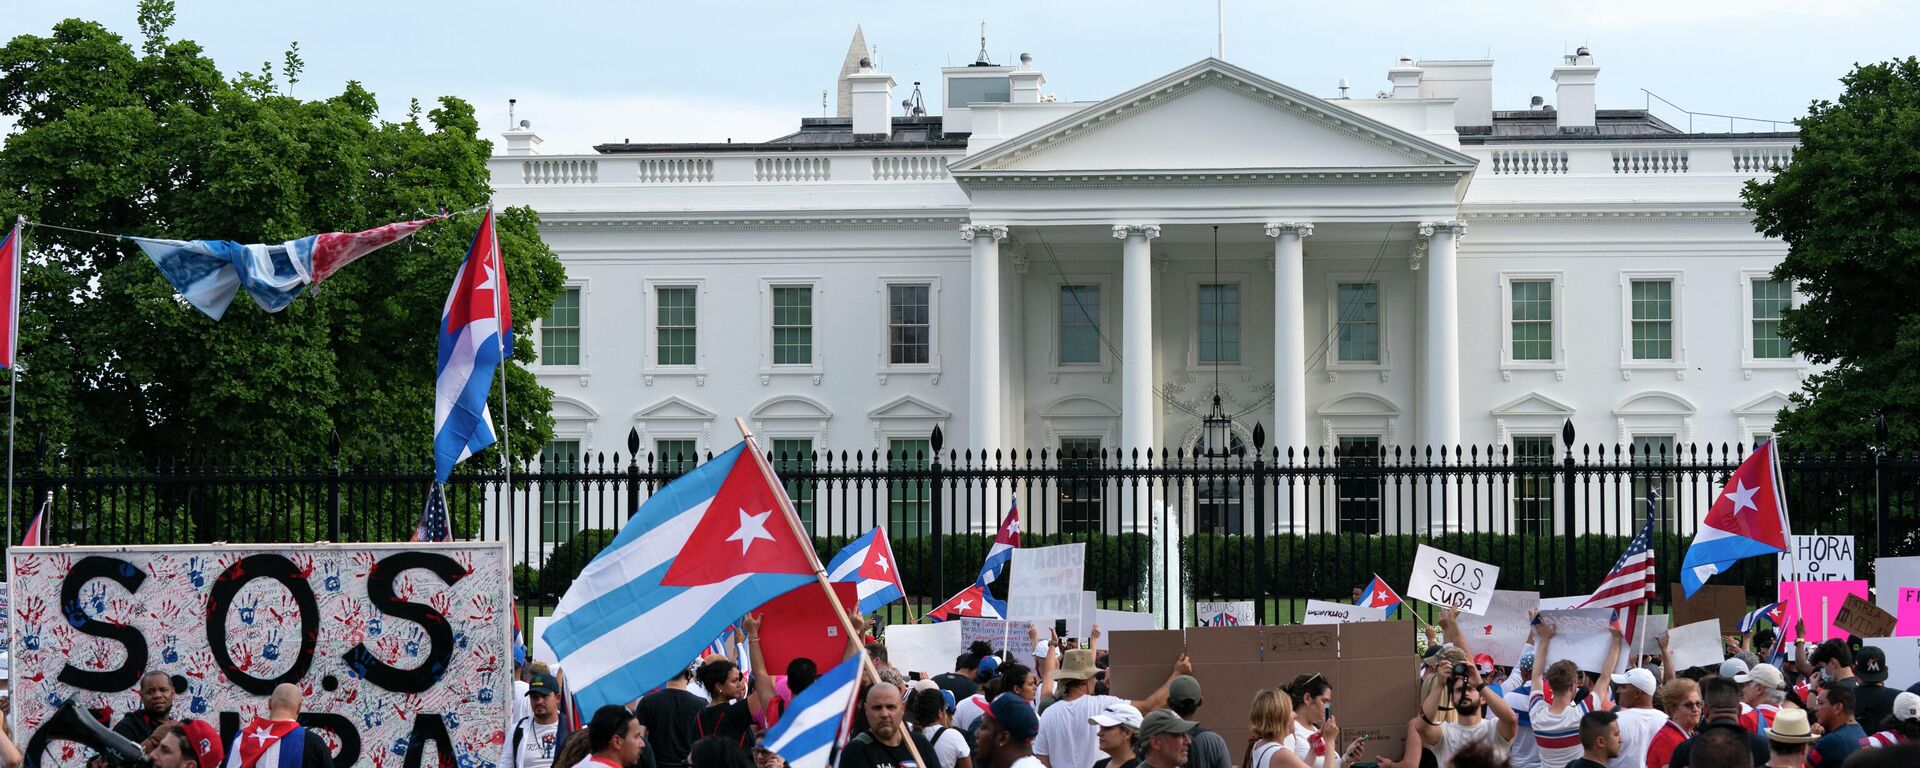 Un acto en apoyo a las protestas en Cuba cerca de la Casa Blanca - Sputnik Mundo, 1920, 18.07.2021